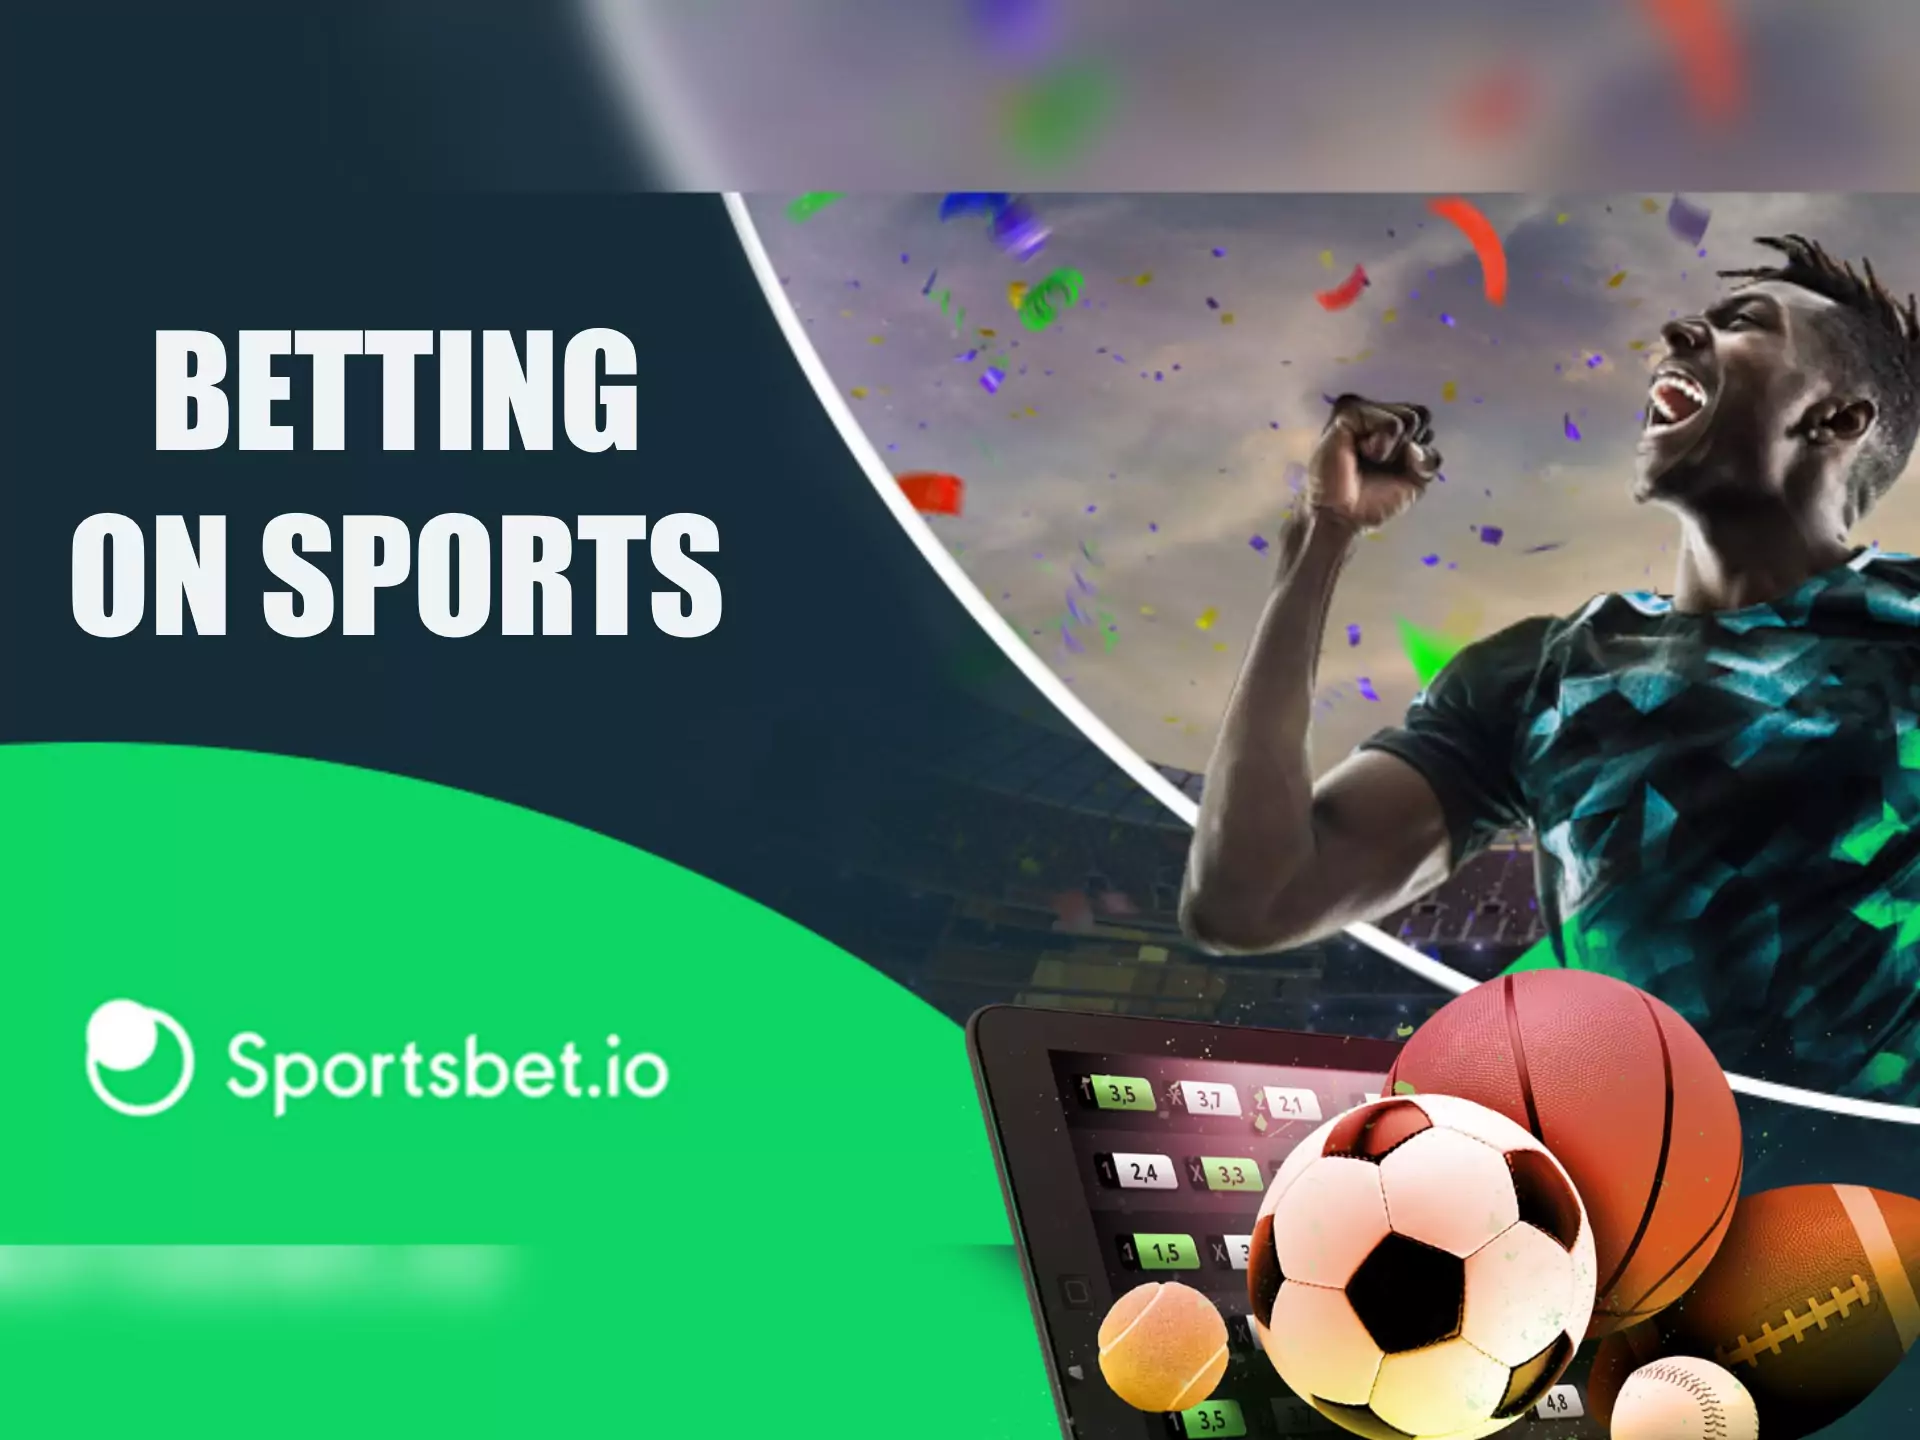 चुनें अपने पसंदीदा खेल के लिए और जगह दांव के माध्यम से Sportsbet एप है।